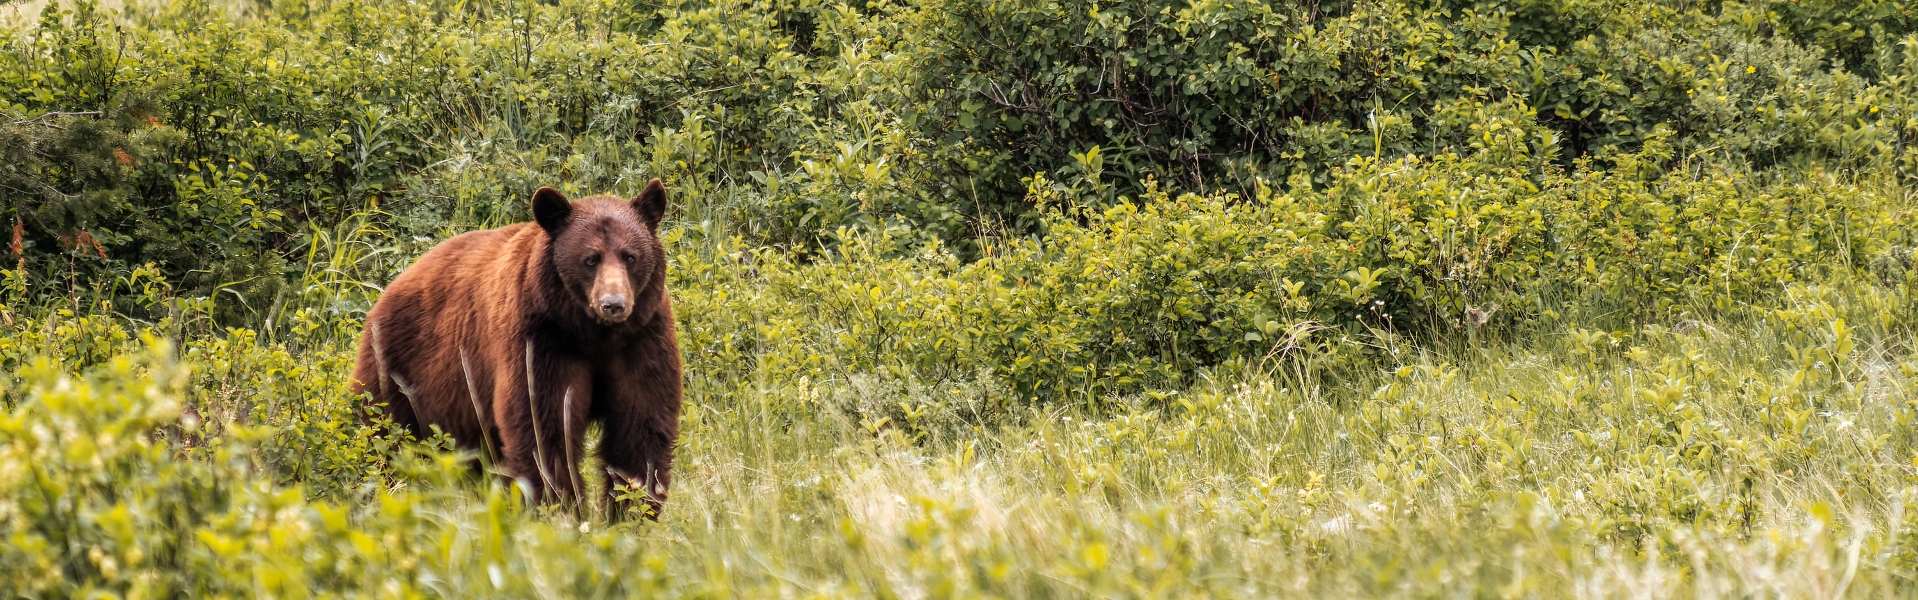 Black bear standing in brush.